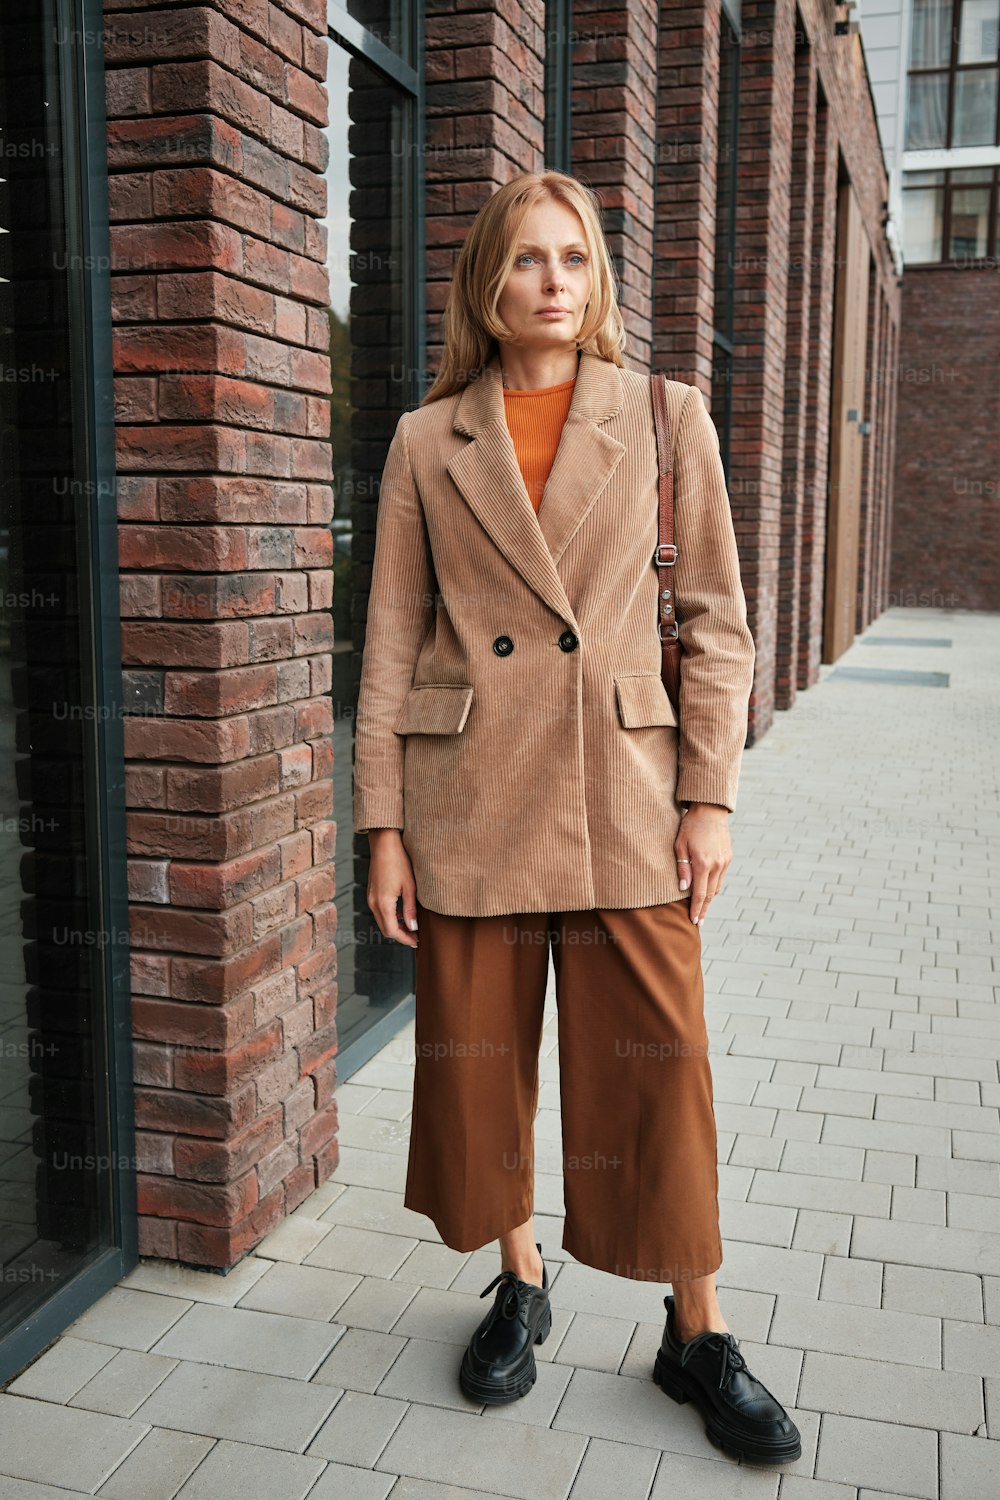 a woman standing on a sidewalk wearing a tan coat